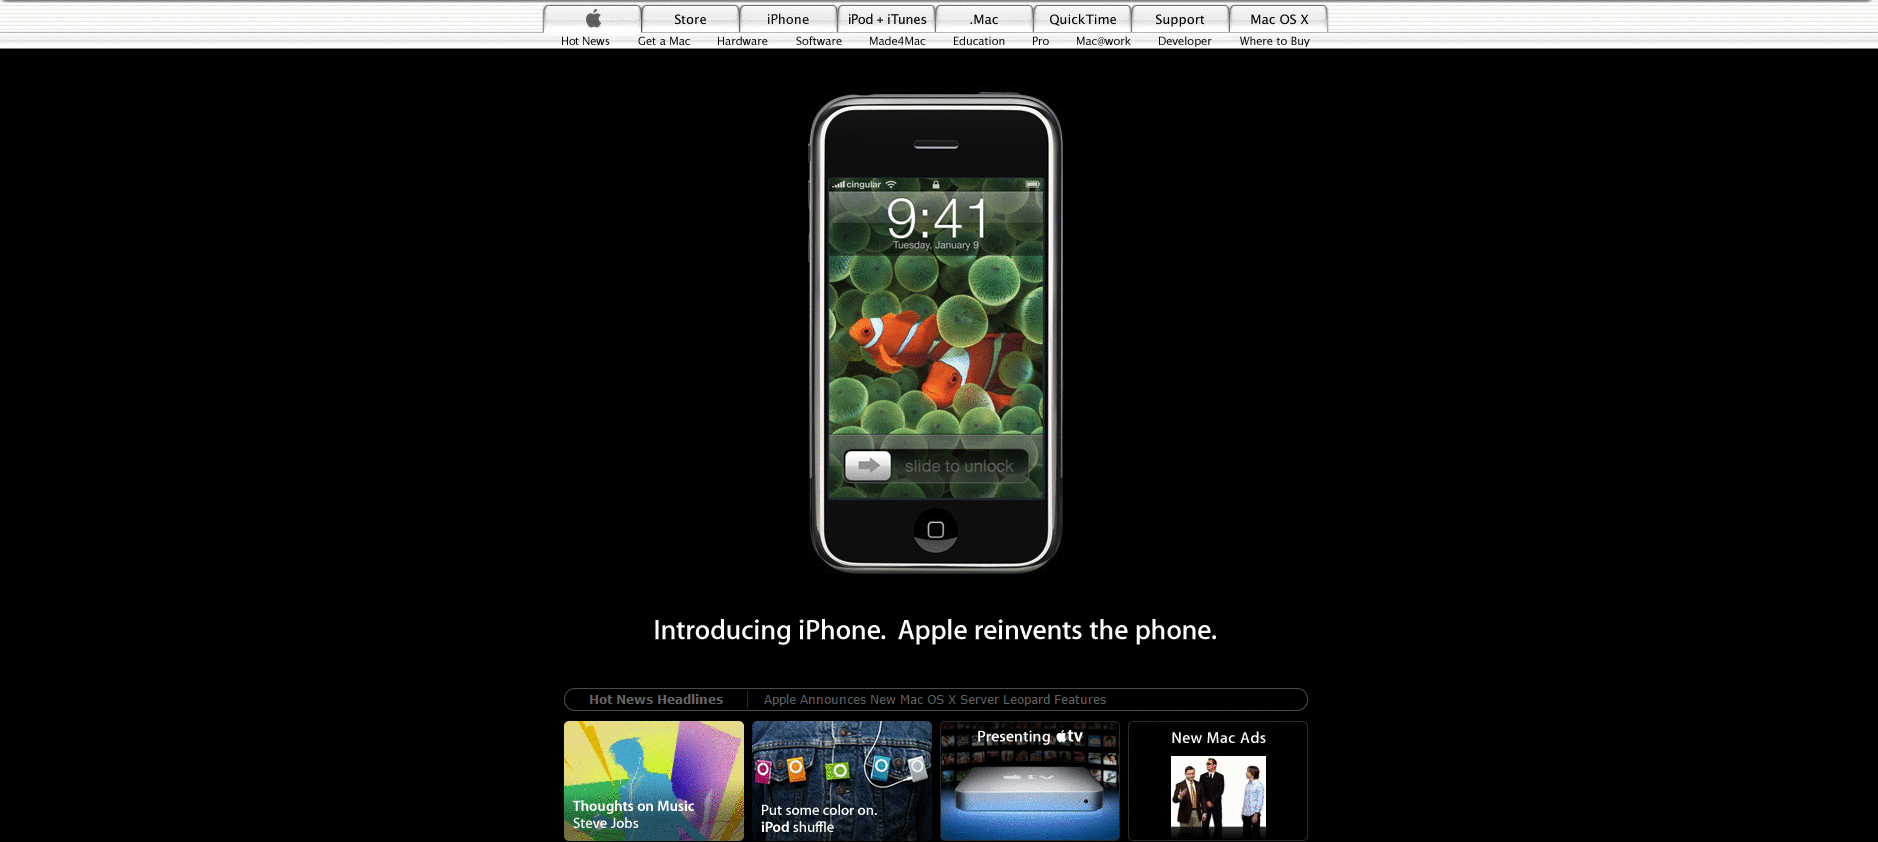 Website Design for apple.com in 2007